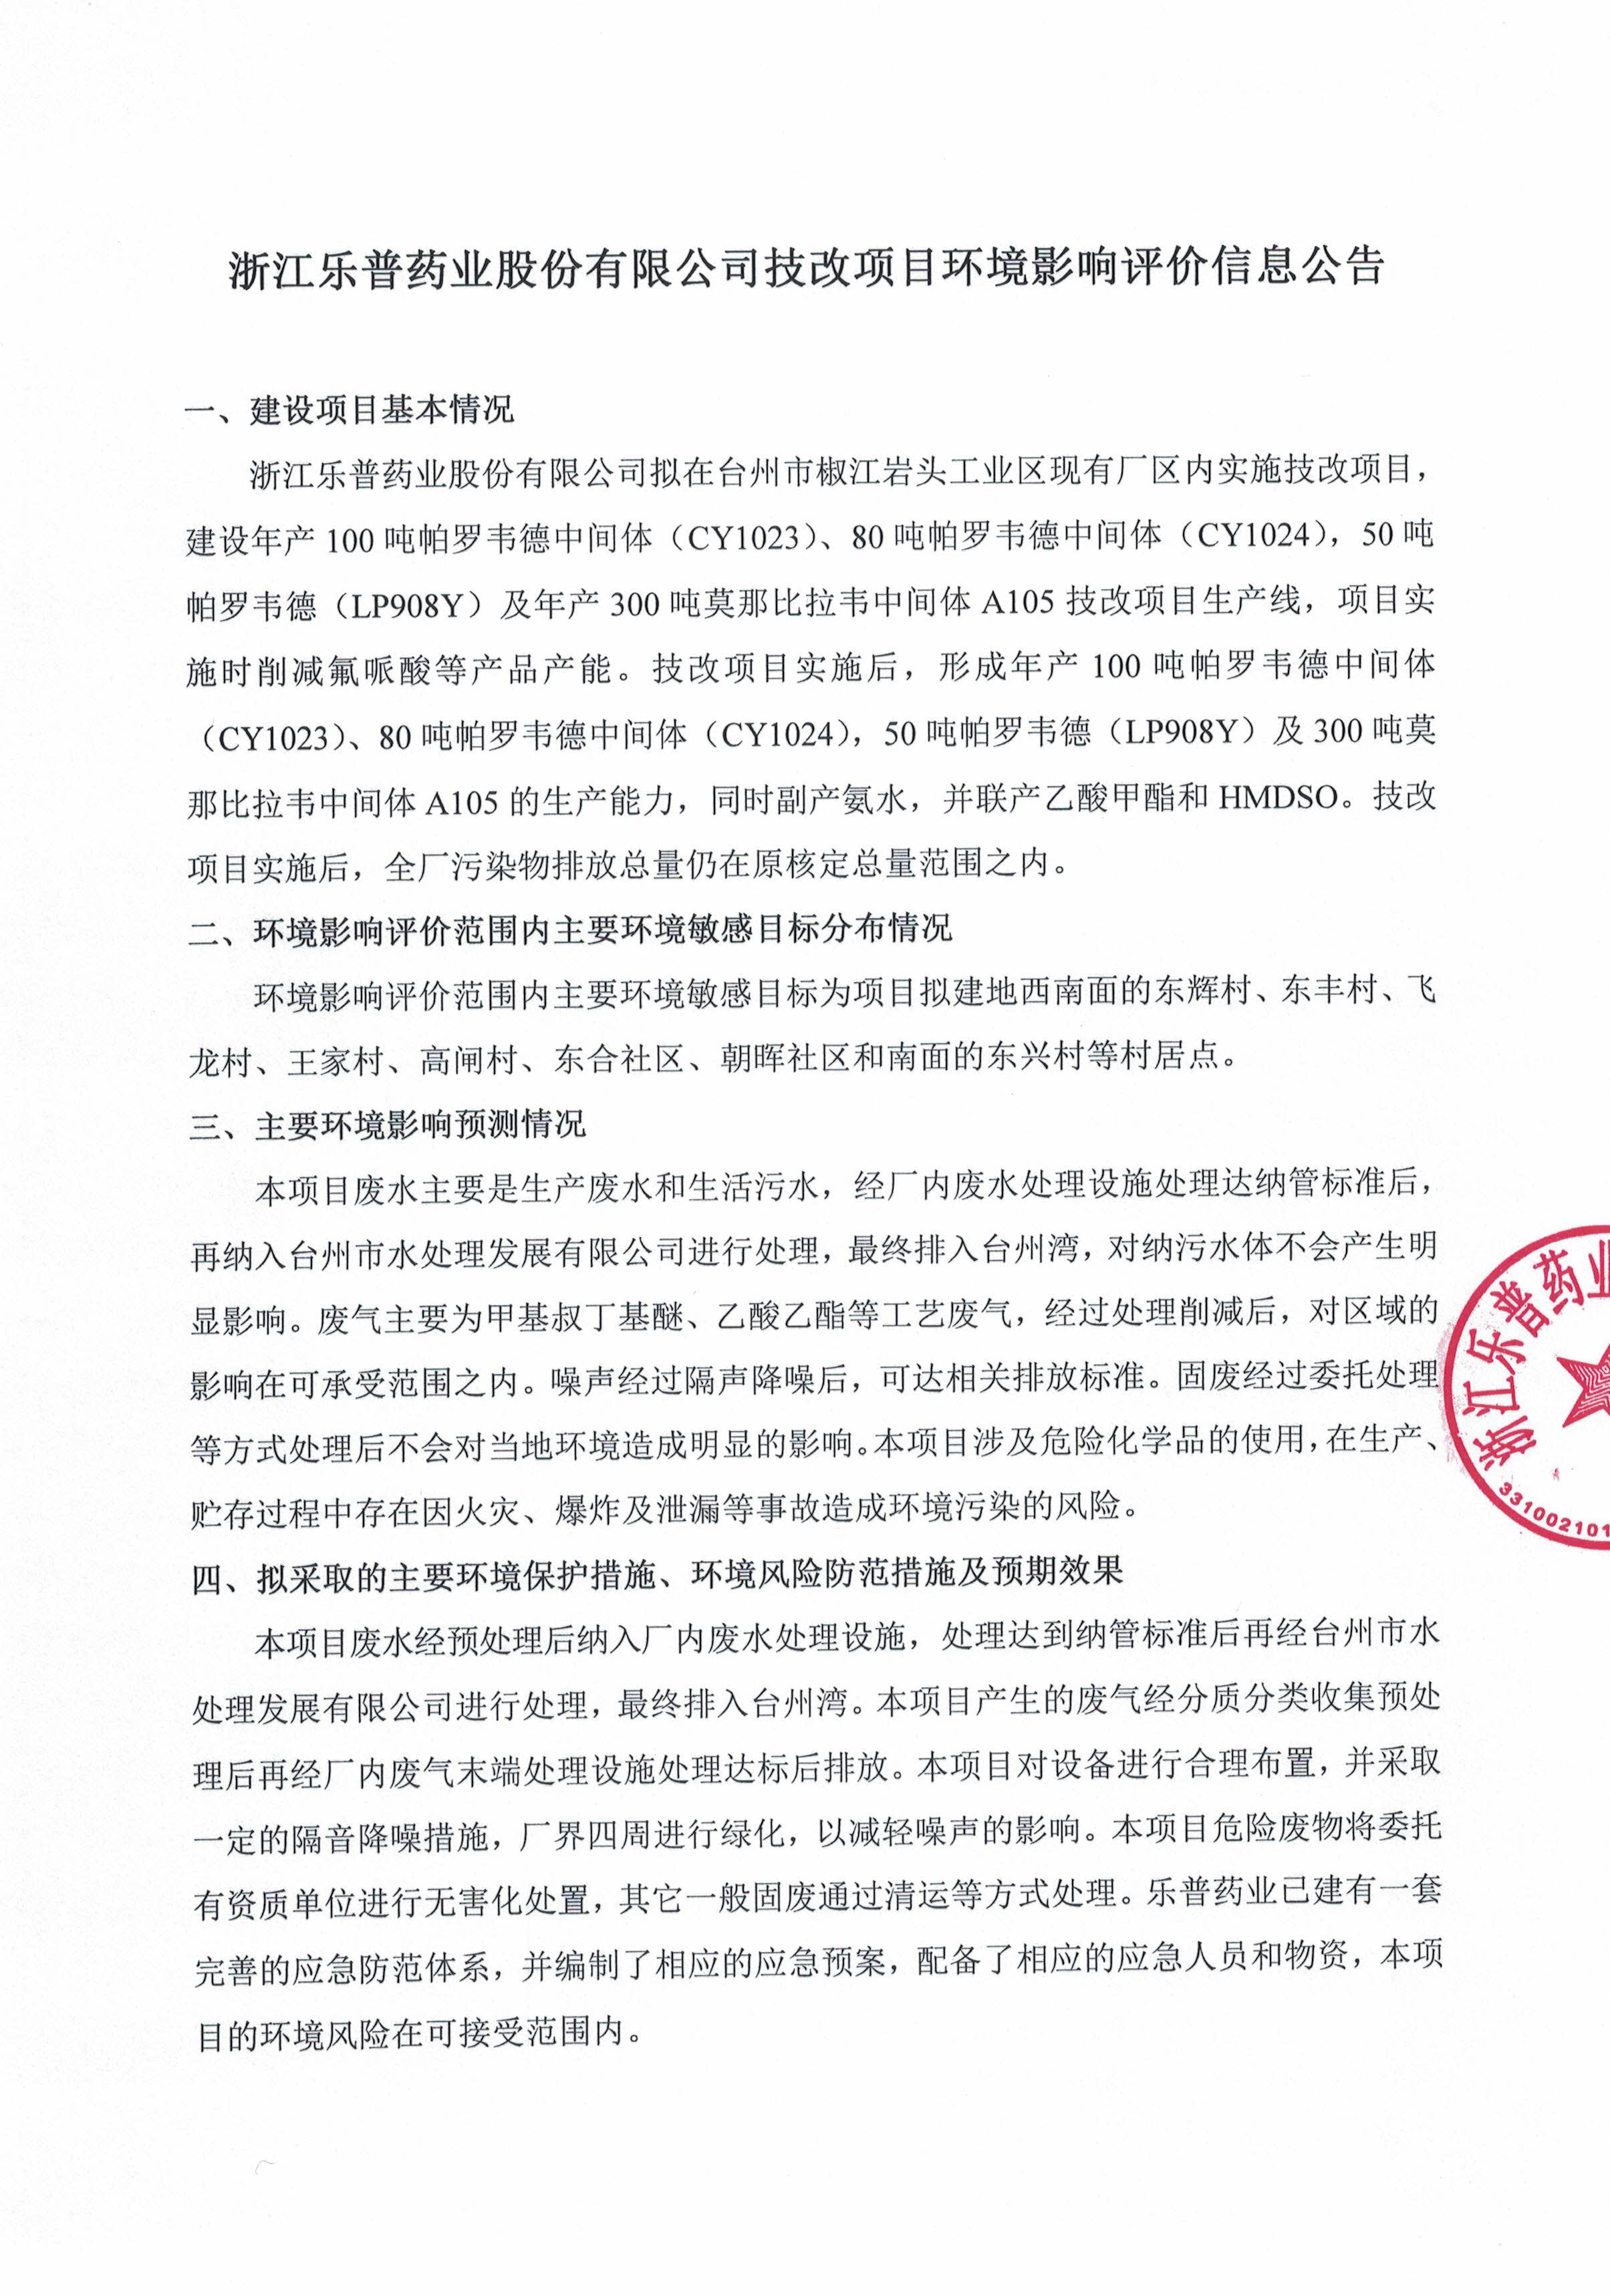 浙江乐普药业股份有限公司技改项目环境影响评价信息公告